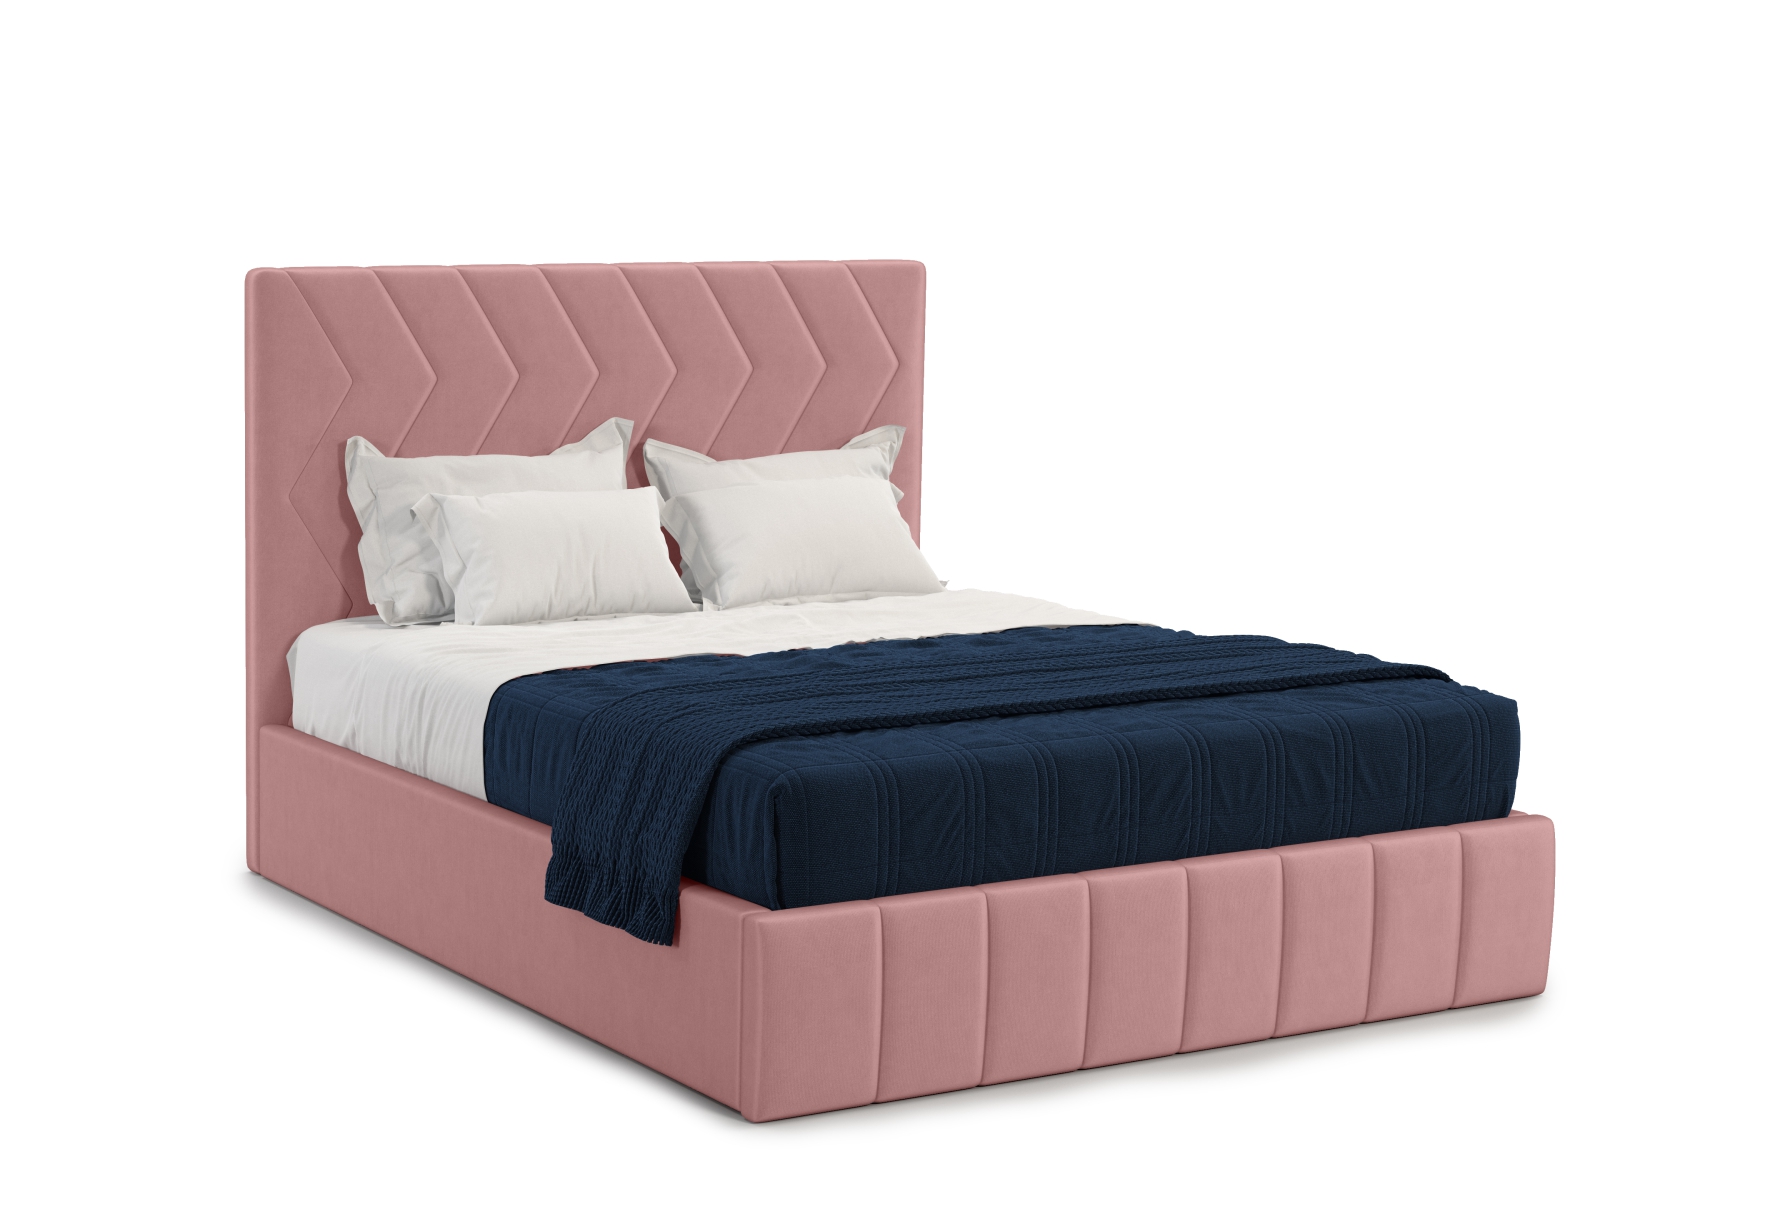 Мягкая кровать Грейс 140*200 (подъемник), цвет bingo mauve